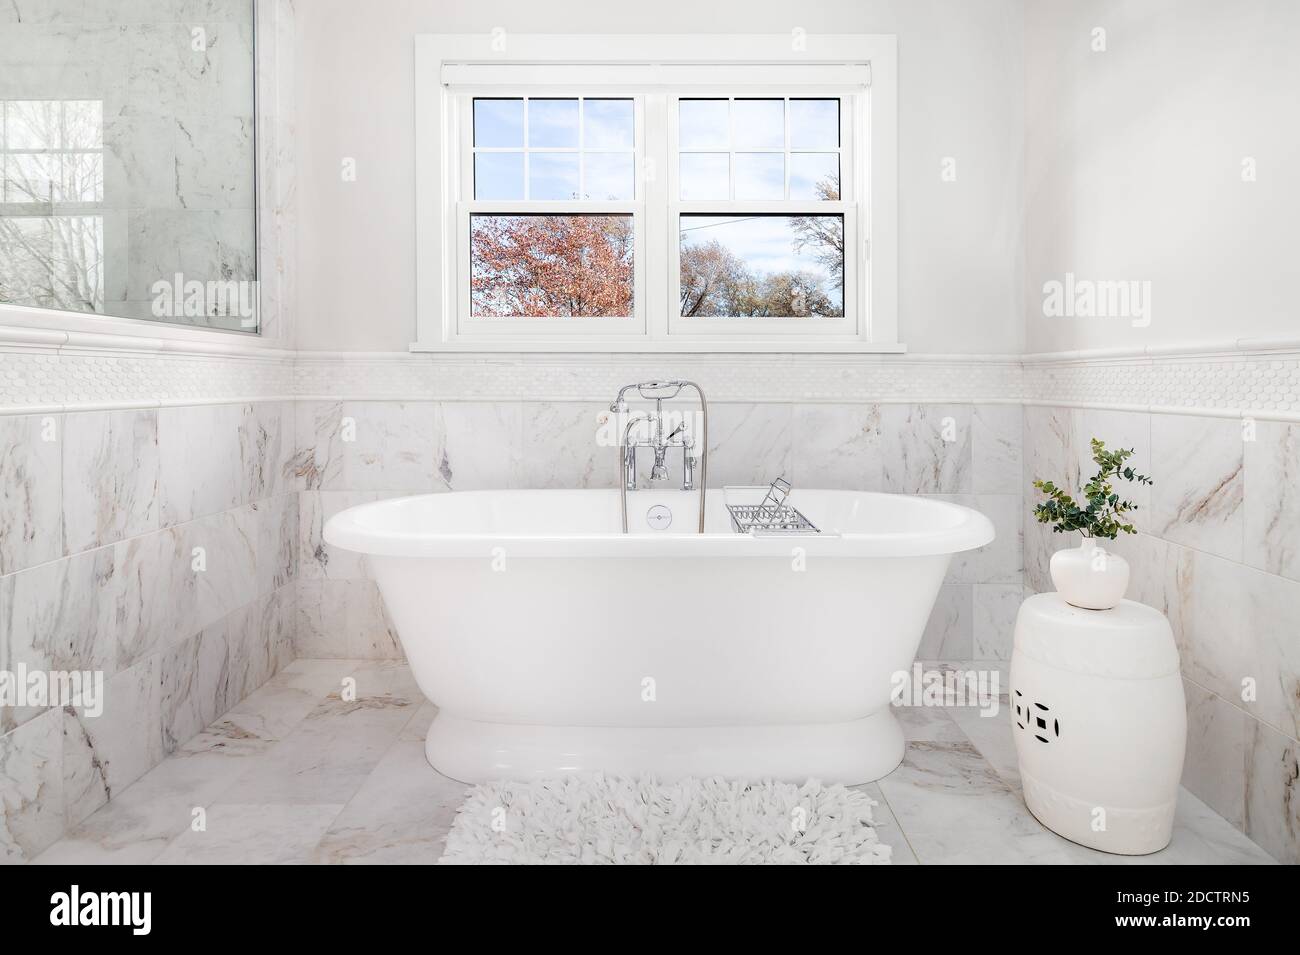 Ein luxuriöses Badezimmer mit einer Victoria + Albert Badewanne und Chrom Wasserhahn umgeben von Marmorfliesen auf dem Boden und an den Wänden. Stockfoto